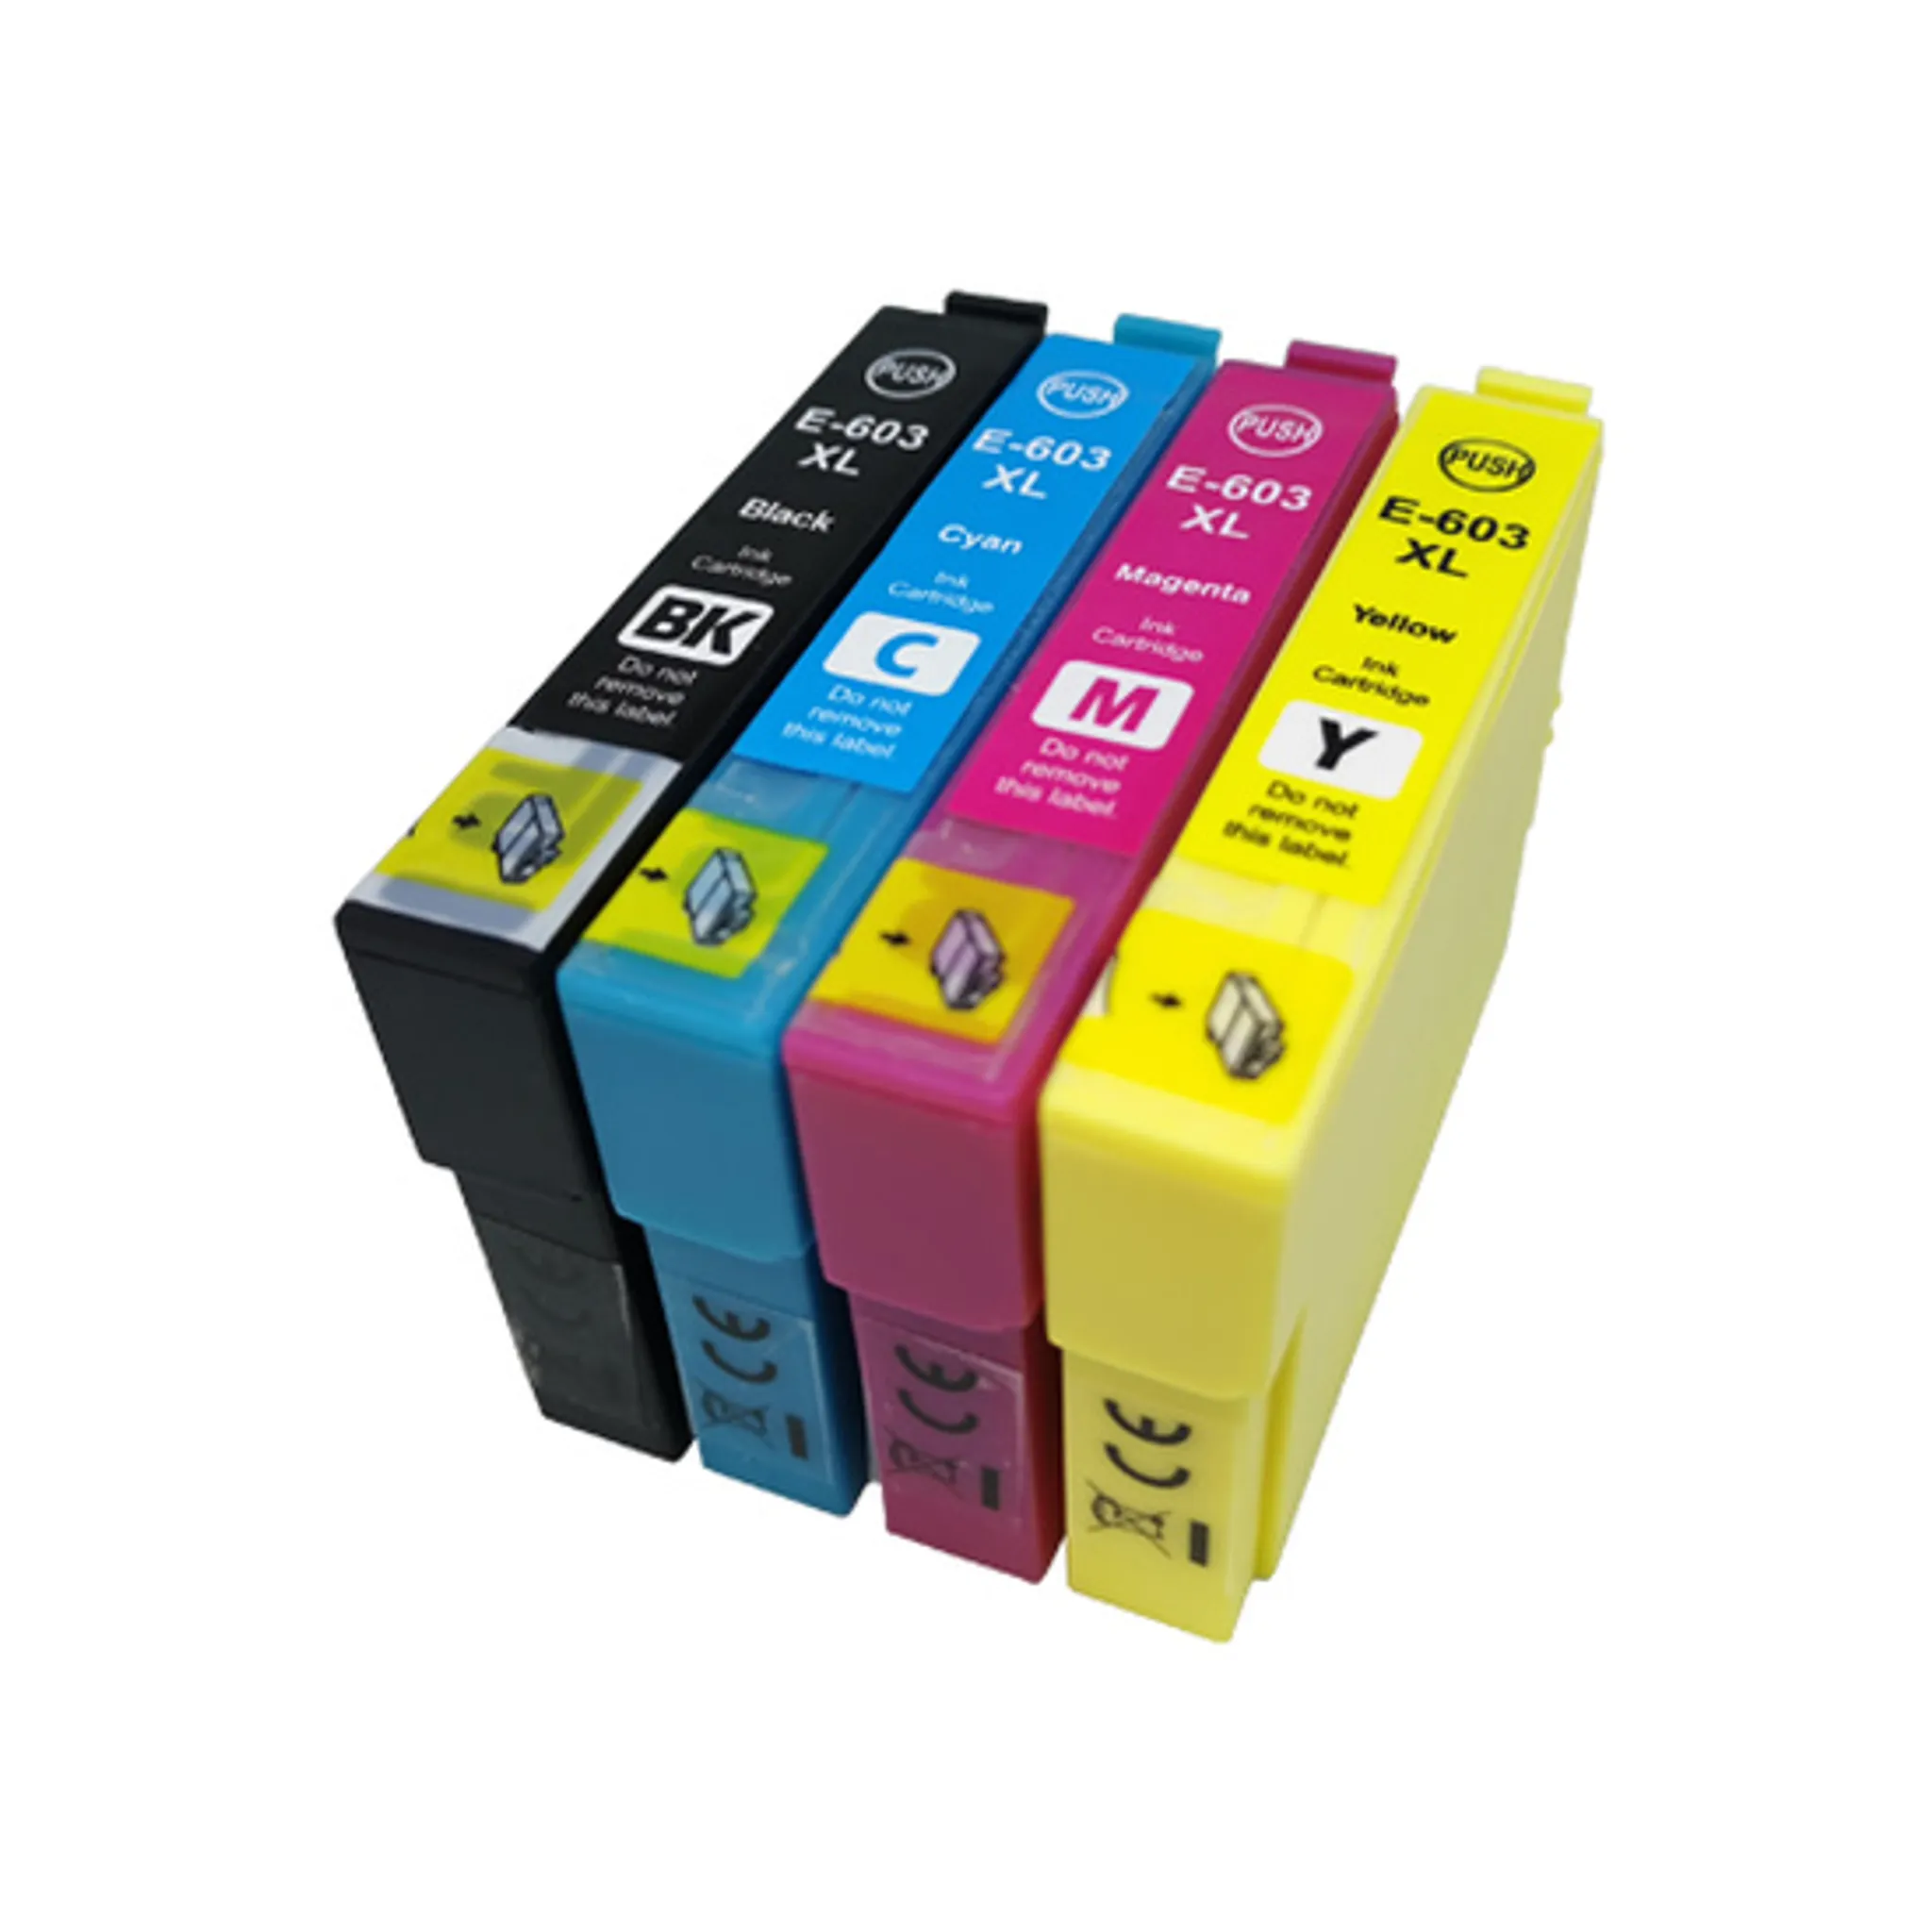 1 Epson Set 603 XL kompatible Tintenpatronen